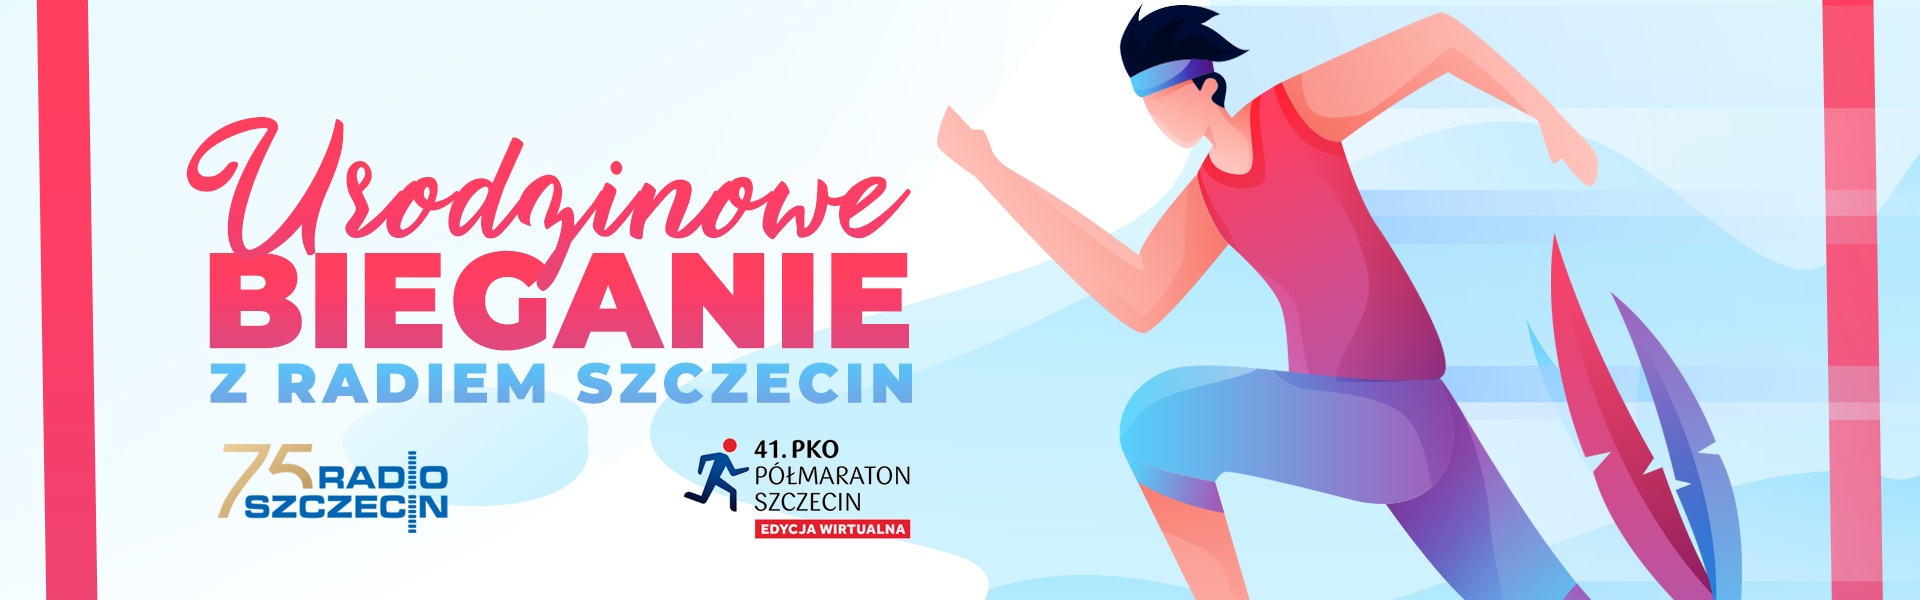 Urodzinowe bieganie z Radiem Szczecin